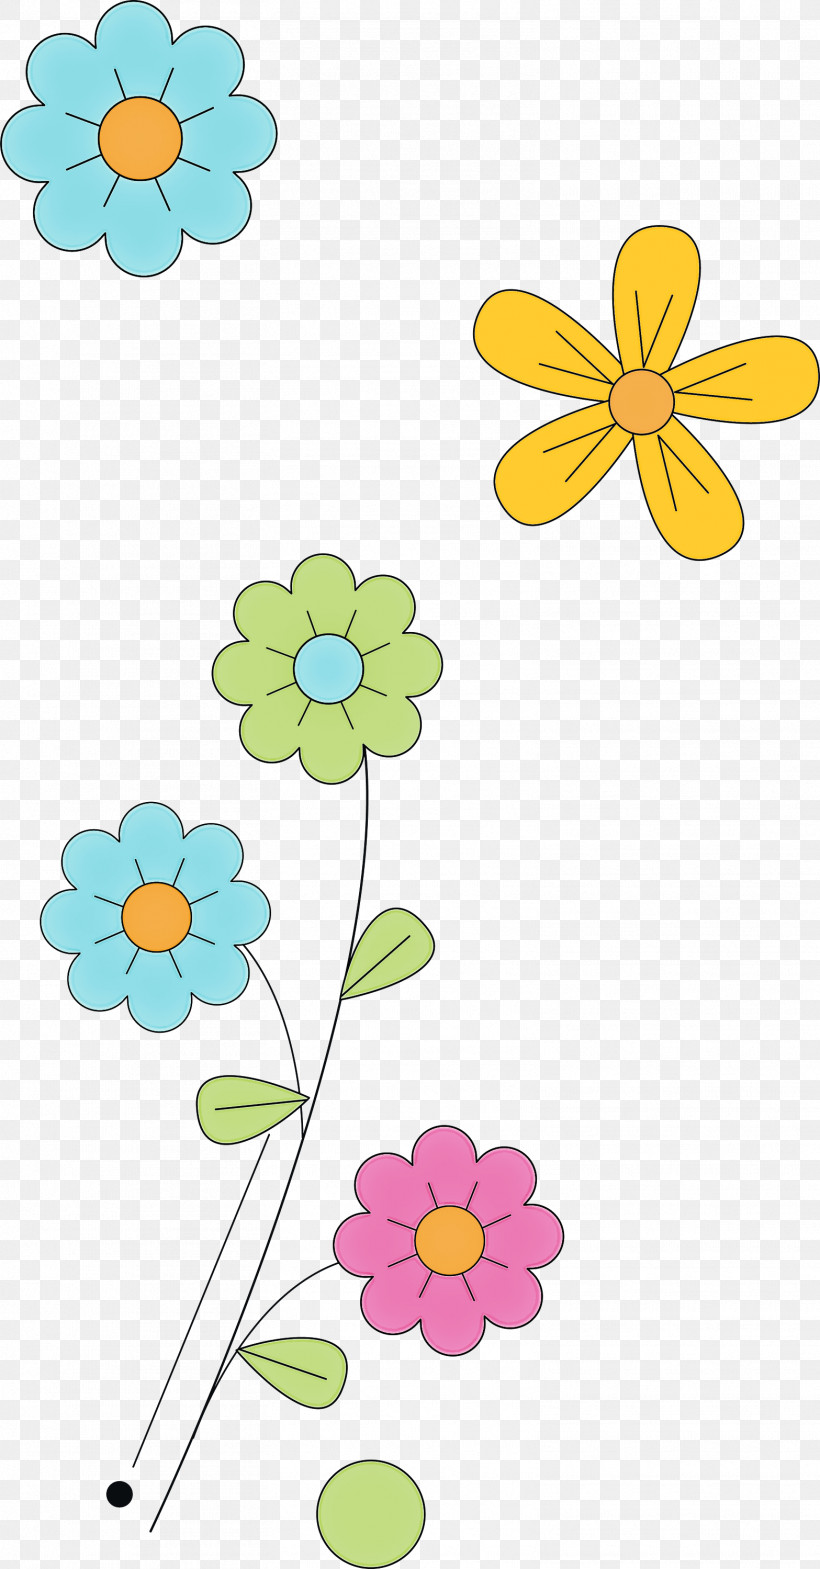 Floral Design, PNG, 1567x2999px, Floral Design, Cut Flowers, Flower, Leaf, Line Art Download Free